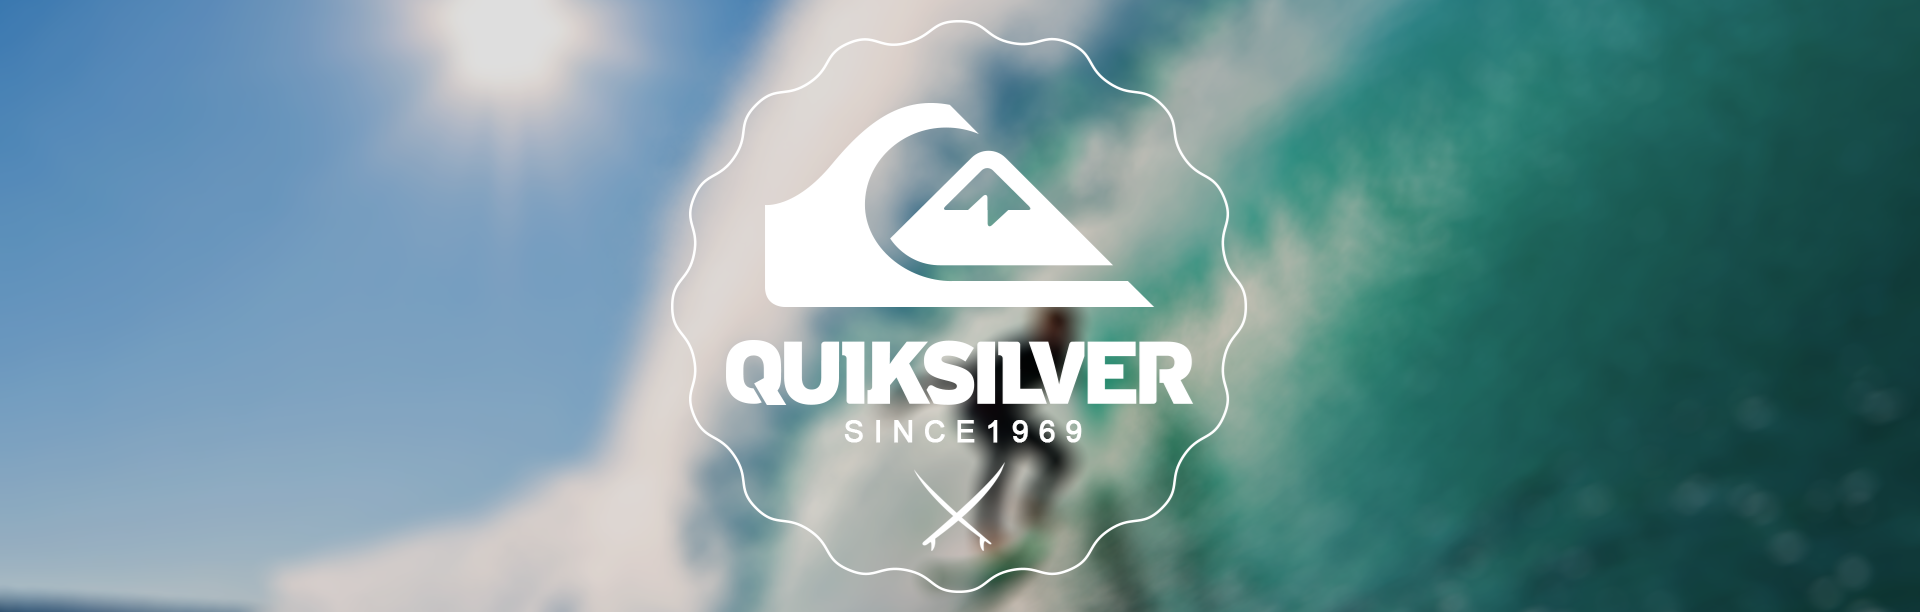 Imagem da logo Quiksilver centralizada, com fundo azul e verde simbolizando o céu e o mar